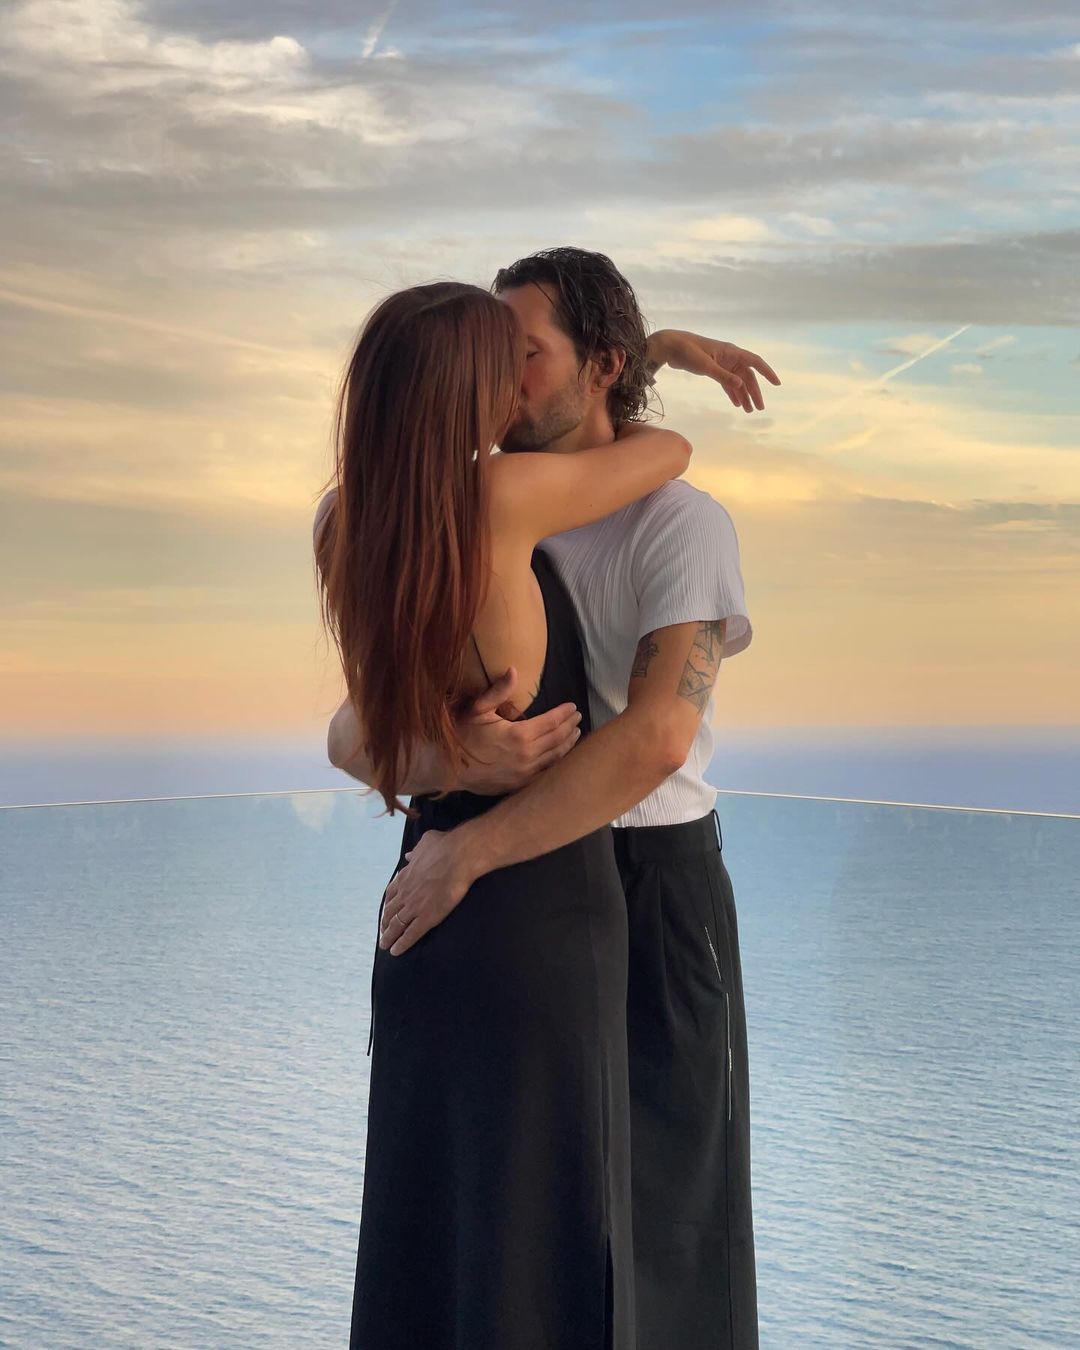 љубав u stvarnom životu: Kako je ovaj Instagram profil postao naš izvor romantike – i lekcija o ljubavi